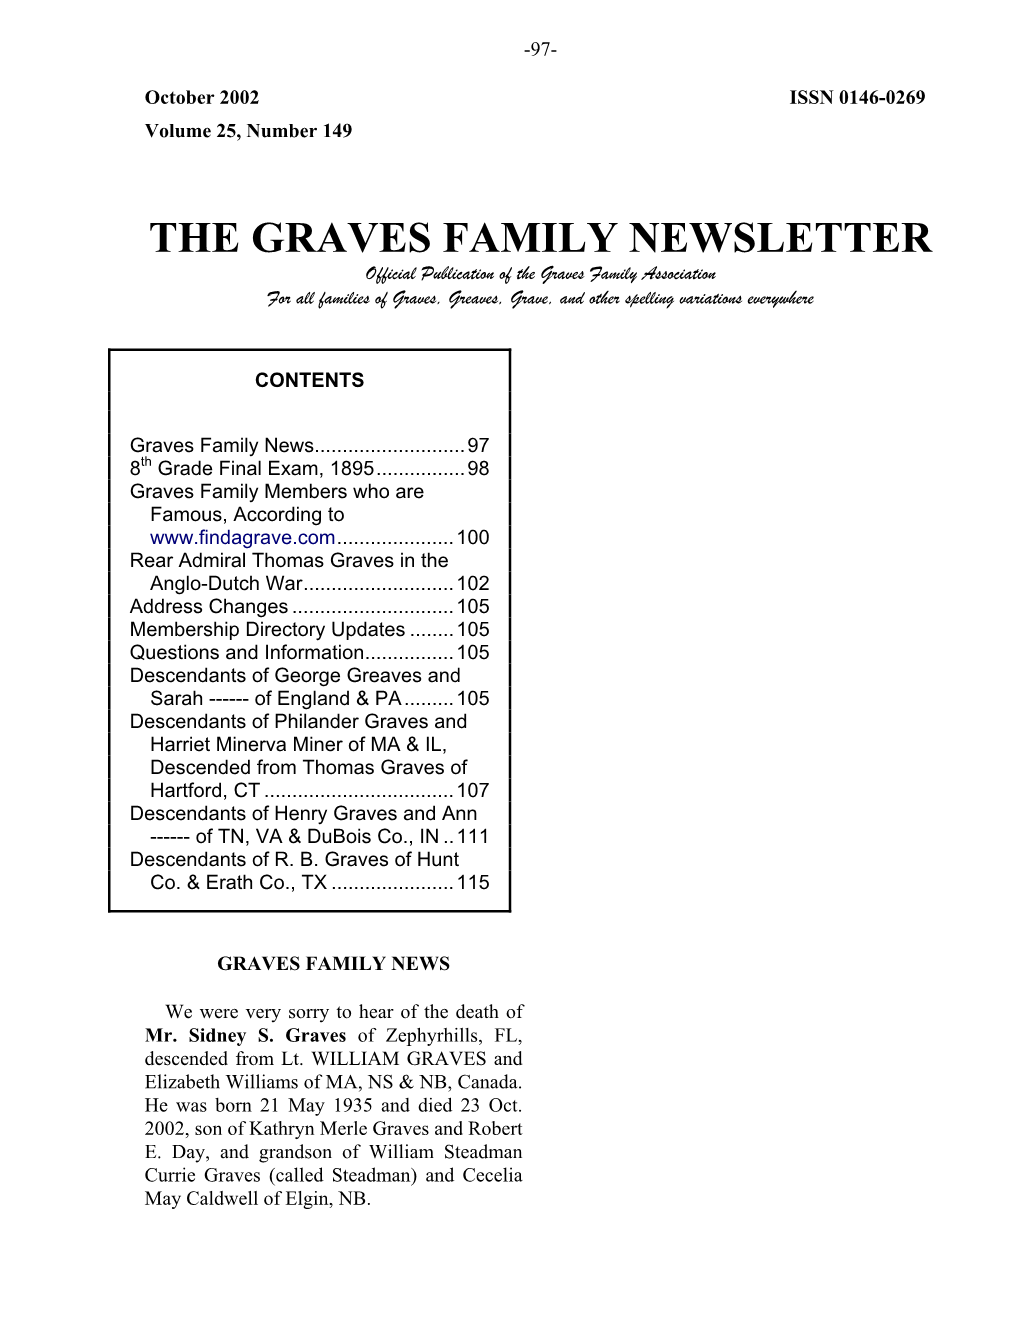 The Graves Family Newsletter